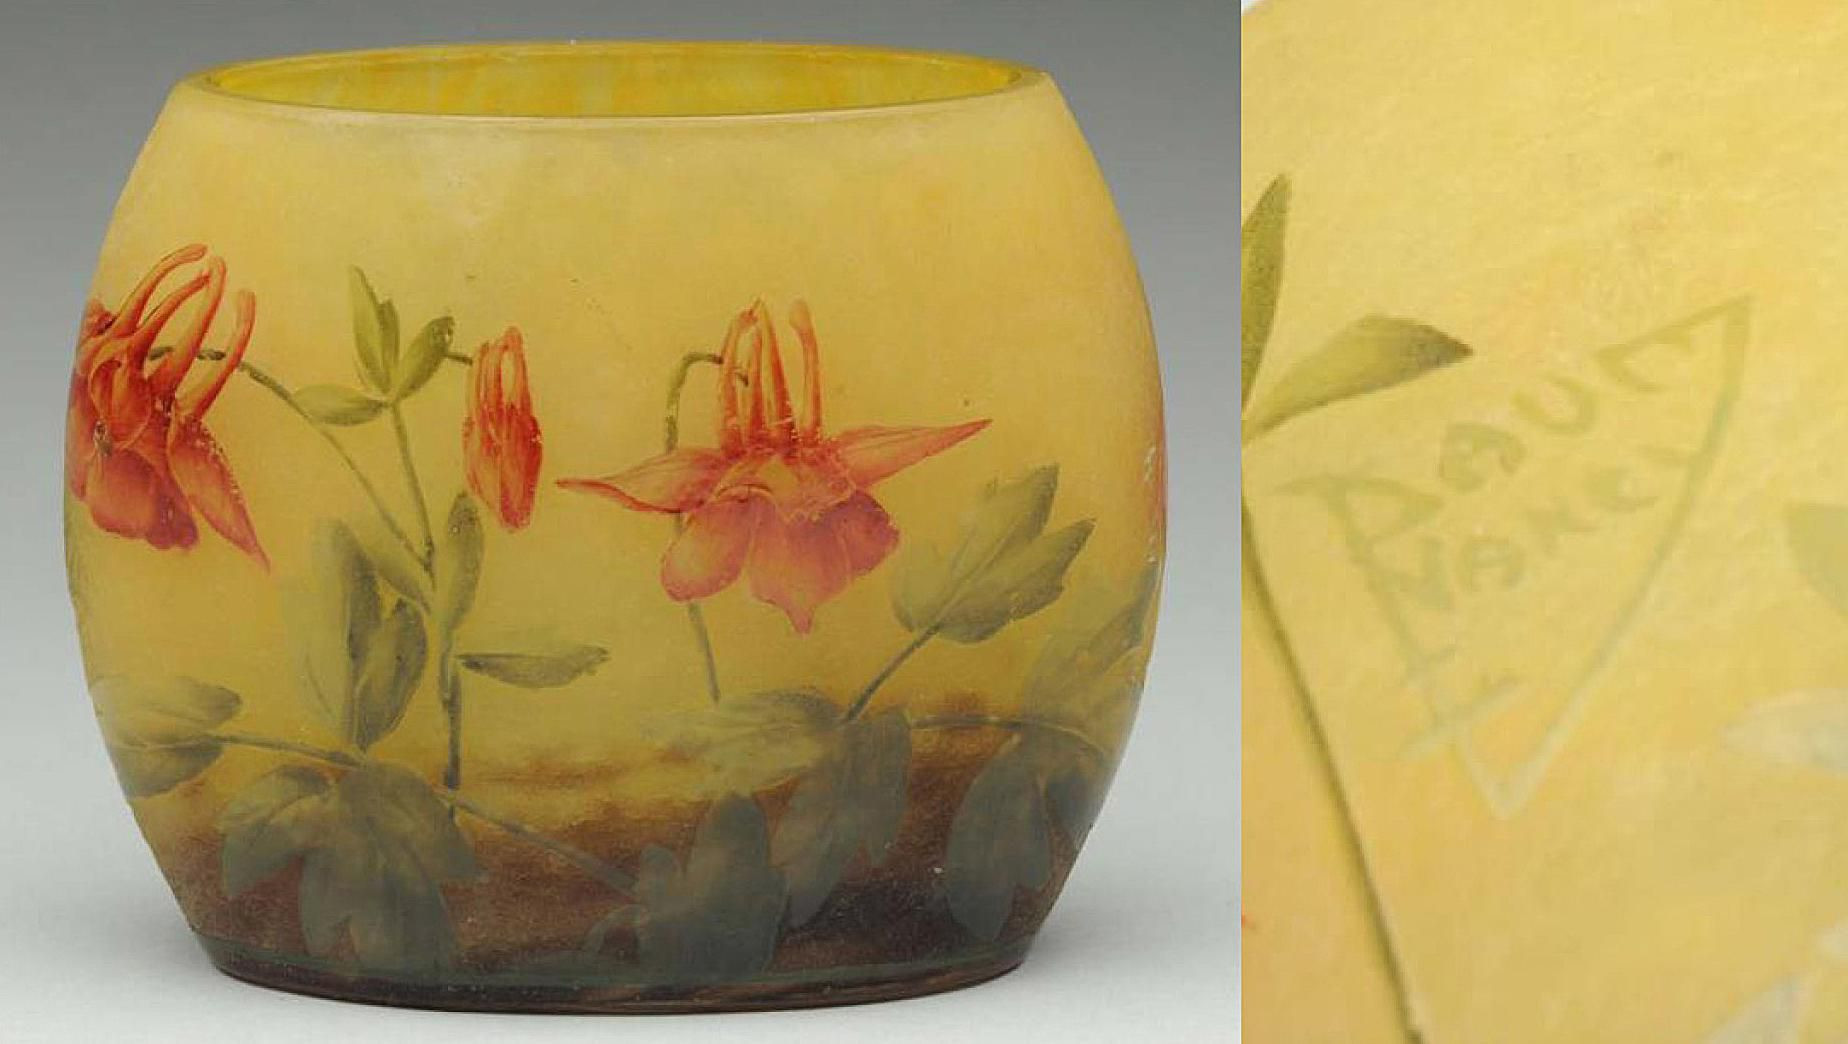 11 Best Daum Daffodil Vase 2024 free download daum daffodil vase of daum nancy art glass history marks and reproductions regarding daumnancy 589d18ae3df78c47589c6fc0